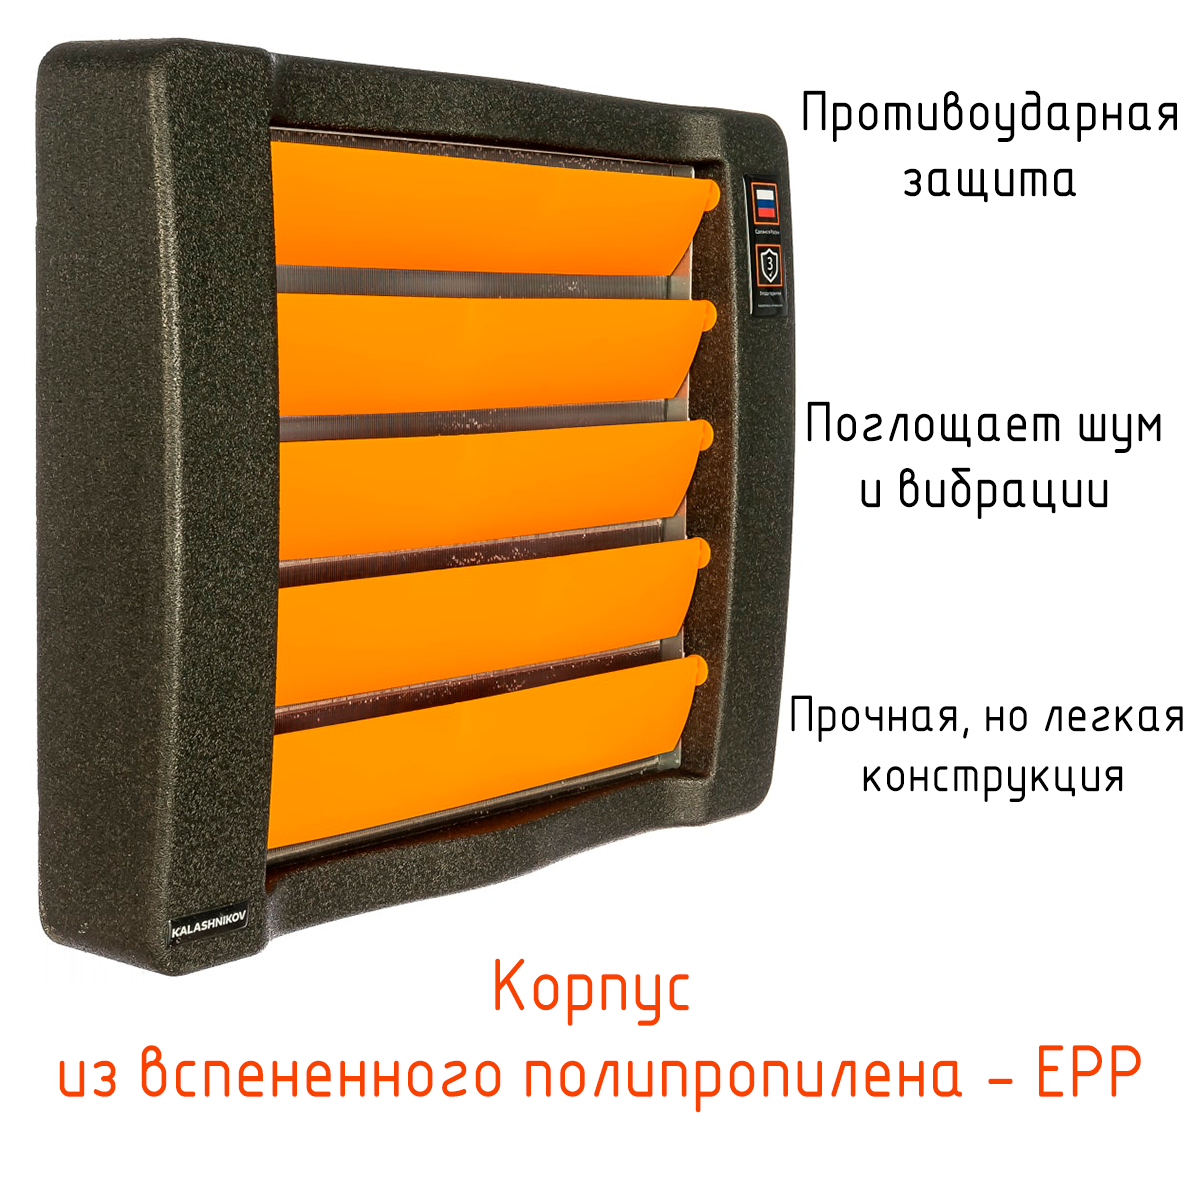 Водяной тепловентилятор KALASHNIKOV KVF-W21-12, 7 - 21кВт. 2